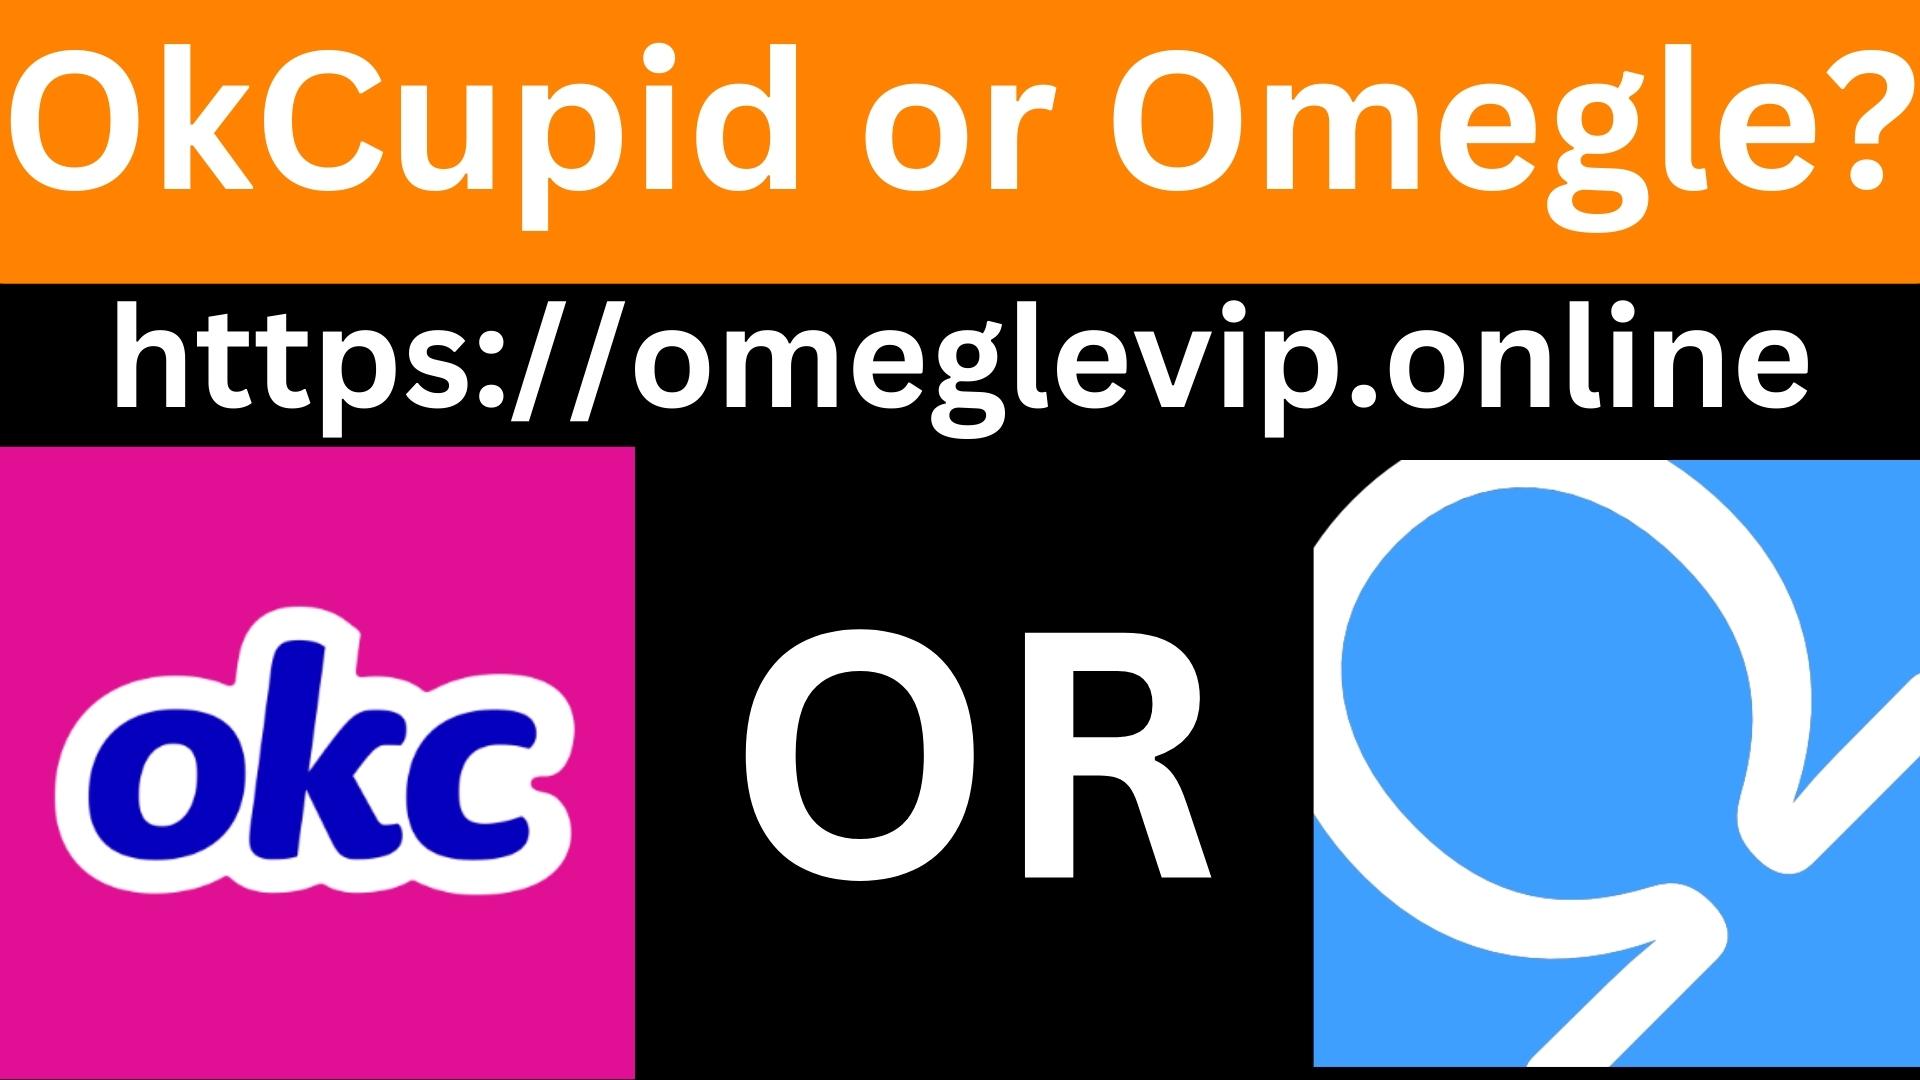 OkCupid or Omegle